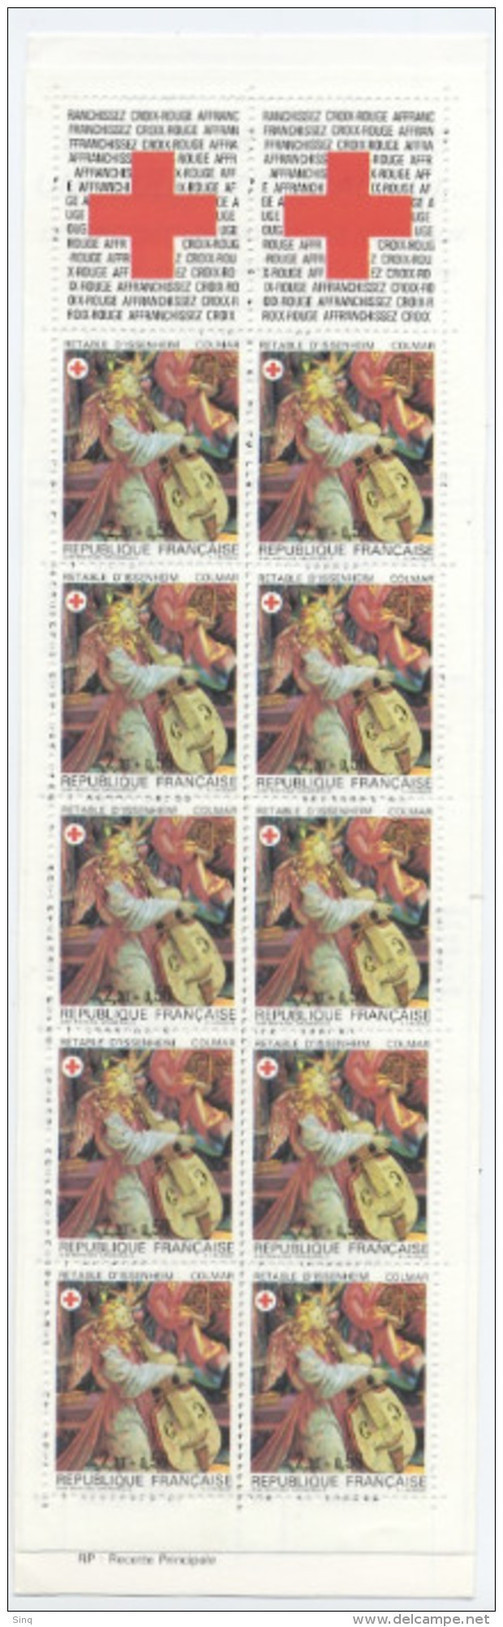 Carnet Croix-rouge 1985, Valeur Faciale 27 Francs - Red Cross